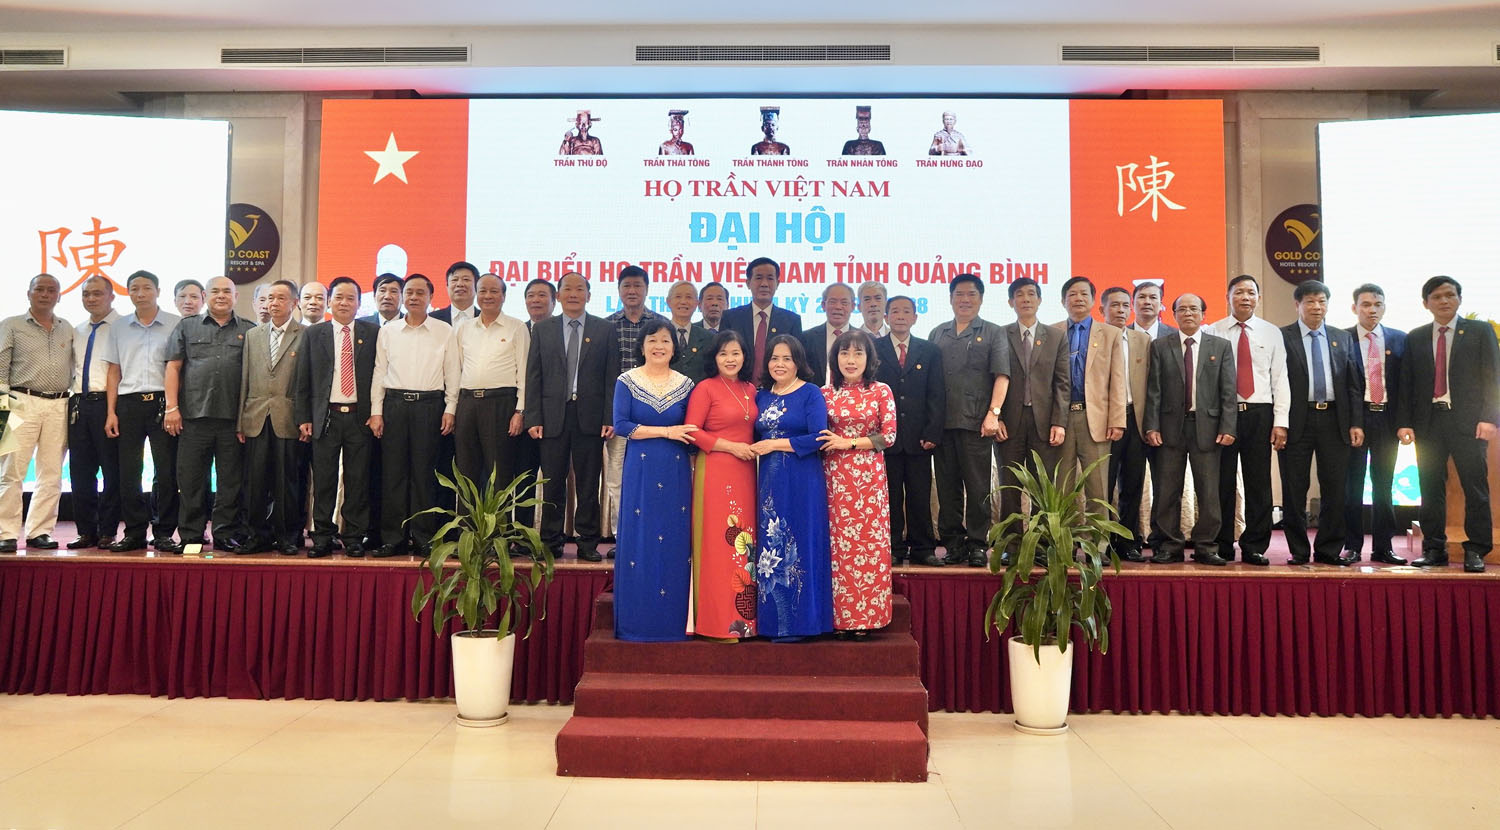 Đại hội đại biểu họ Trần Việt Nam tỉnh Quảng Bình nhiệm kỳ 2023-2028